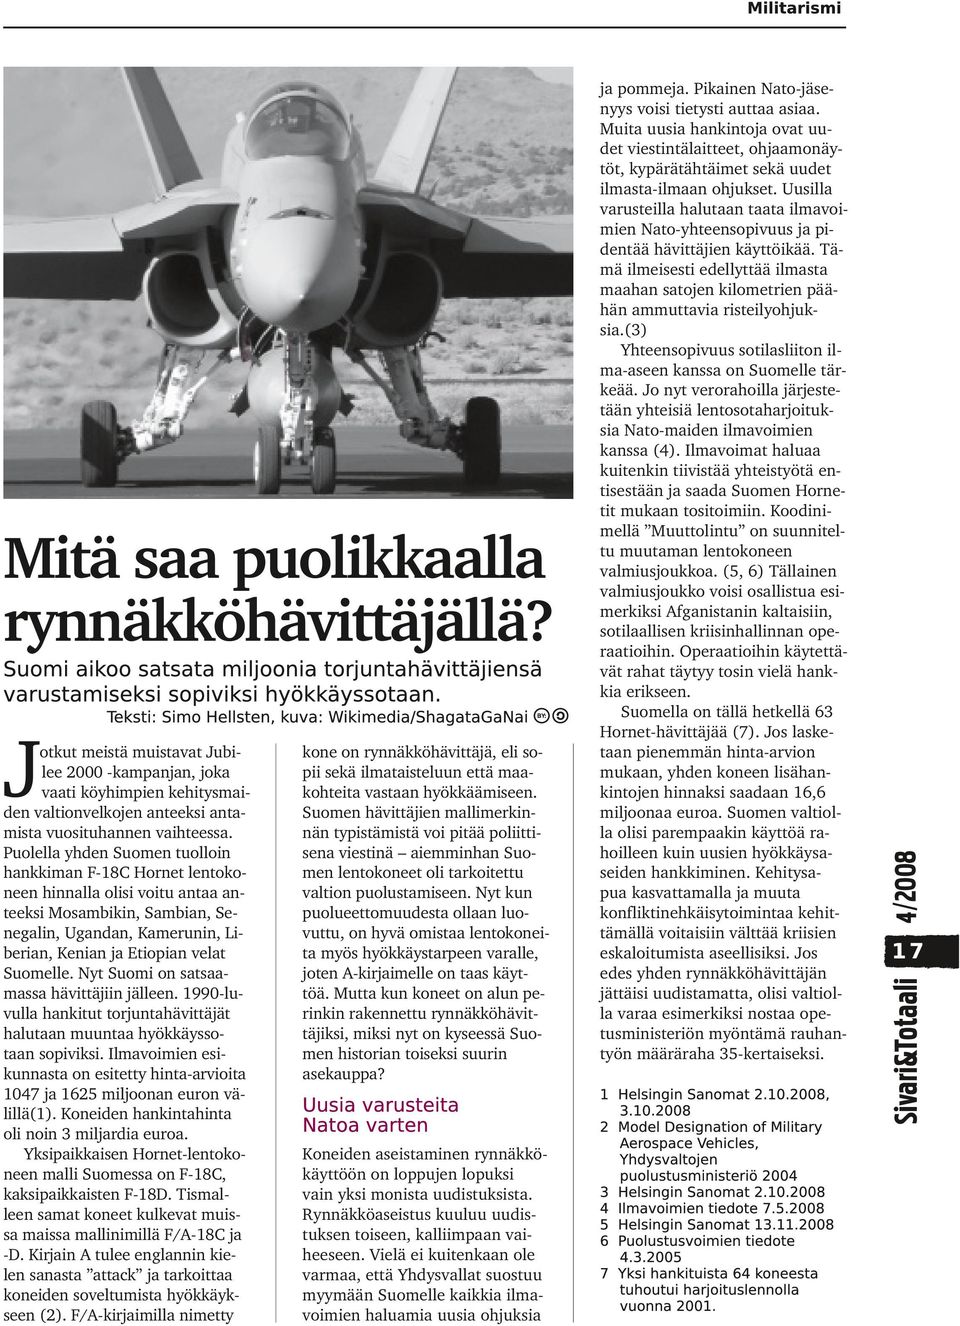 Nyt Suomi on satsaamassa hävittäjiin jälleen. 1990-luvulla hankitut torjuntahävittäjät halutaan muuntaa hyökkäyssotaan sopiviksi.